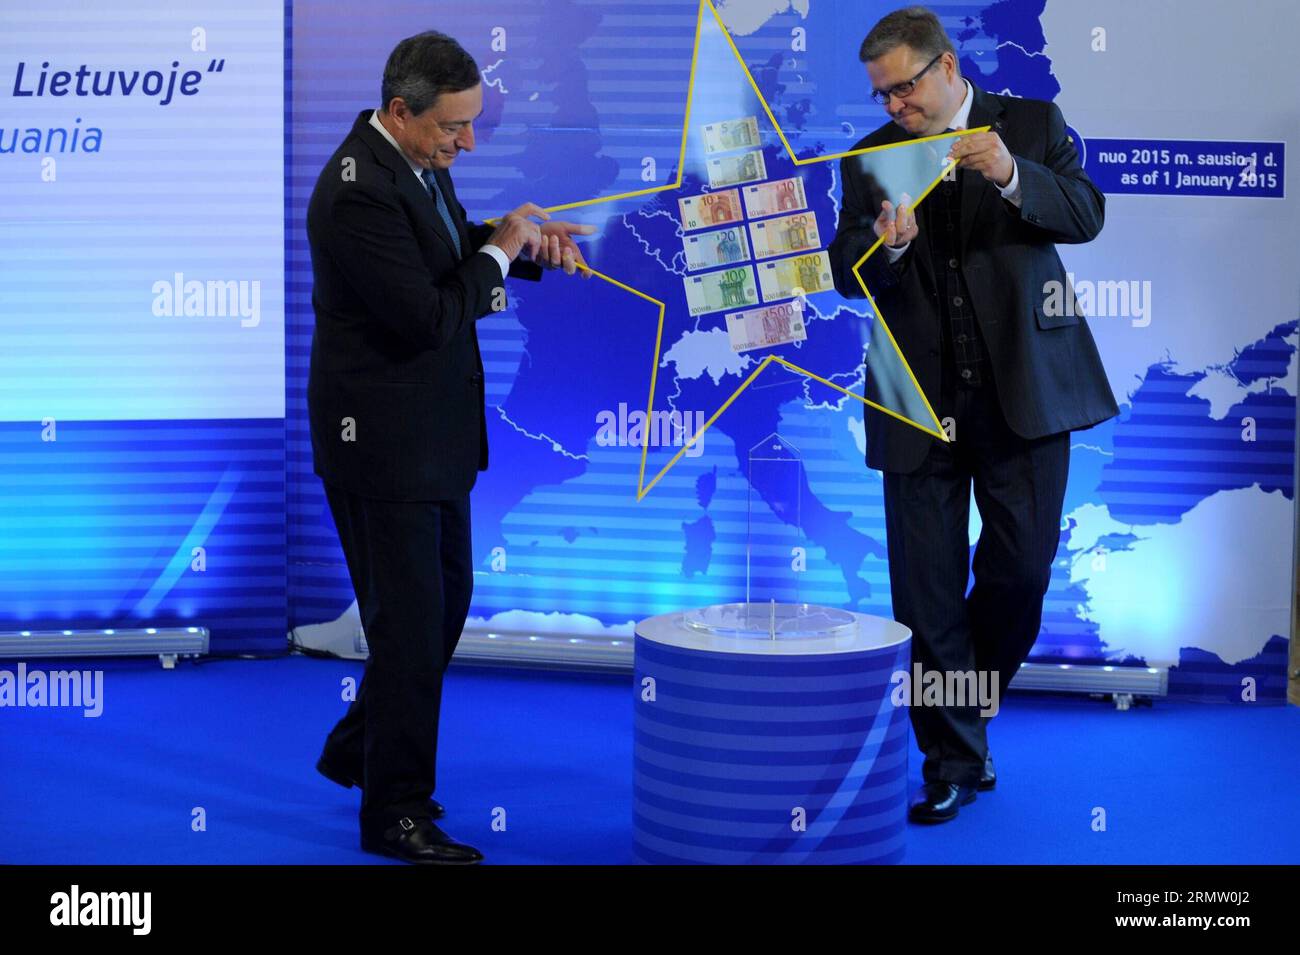 (140925) -- VILNIUS, 25. September 2014 -- der Präsident der Europäischen Zentralbank (EZB) Mario Draghi (L) übergibt Euro Star am 25. September 2014 an den Präsidenten der litauischen Zentralbank Vitas Vasiliauskas in Vilnius, Litauen. EZB-Präsident Mario Draghi überreichte hier am Donnerstag einen Euro Star an den Vorsitzenden der litauischen Zentralbank, ein Zeichen, das Litauens Mitgliedschaft im Euro-Währungsgebiet symbolisiert. ) (lmz) LUTHUANIA-VILNIUS-EURO STAR AlfredasxPliadis PUBLICATIONxNOTxINxCHN Vilnius Sept 25 2014 EZB-Präsident Mario Draghi l übergibt Euro Star an den Präsidenten der Litauischen Zentren Stockfoto